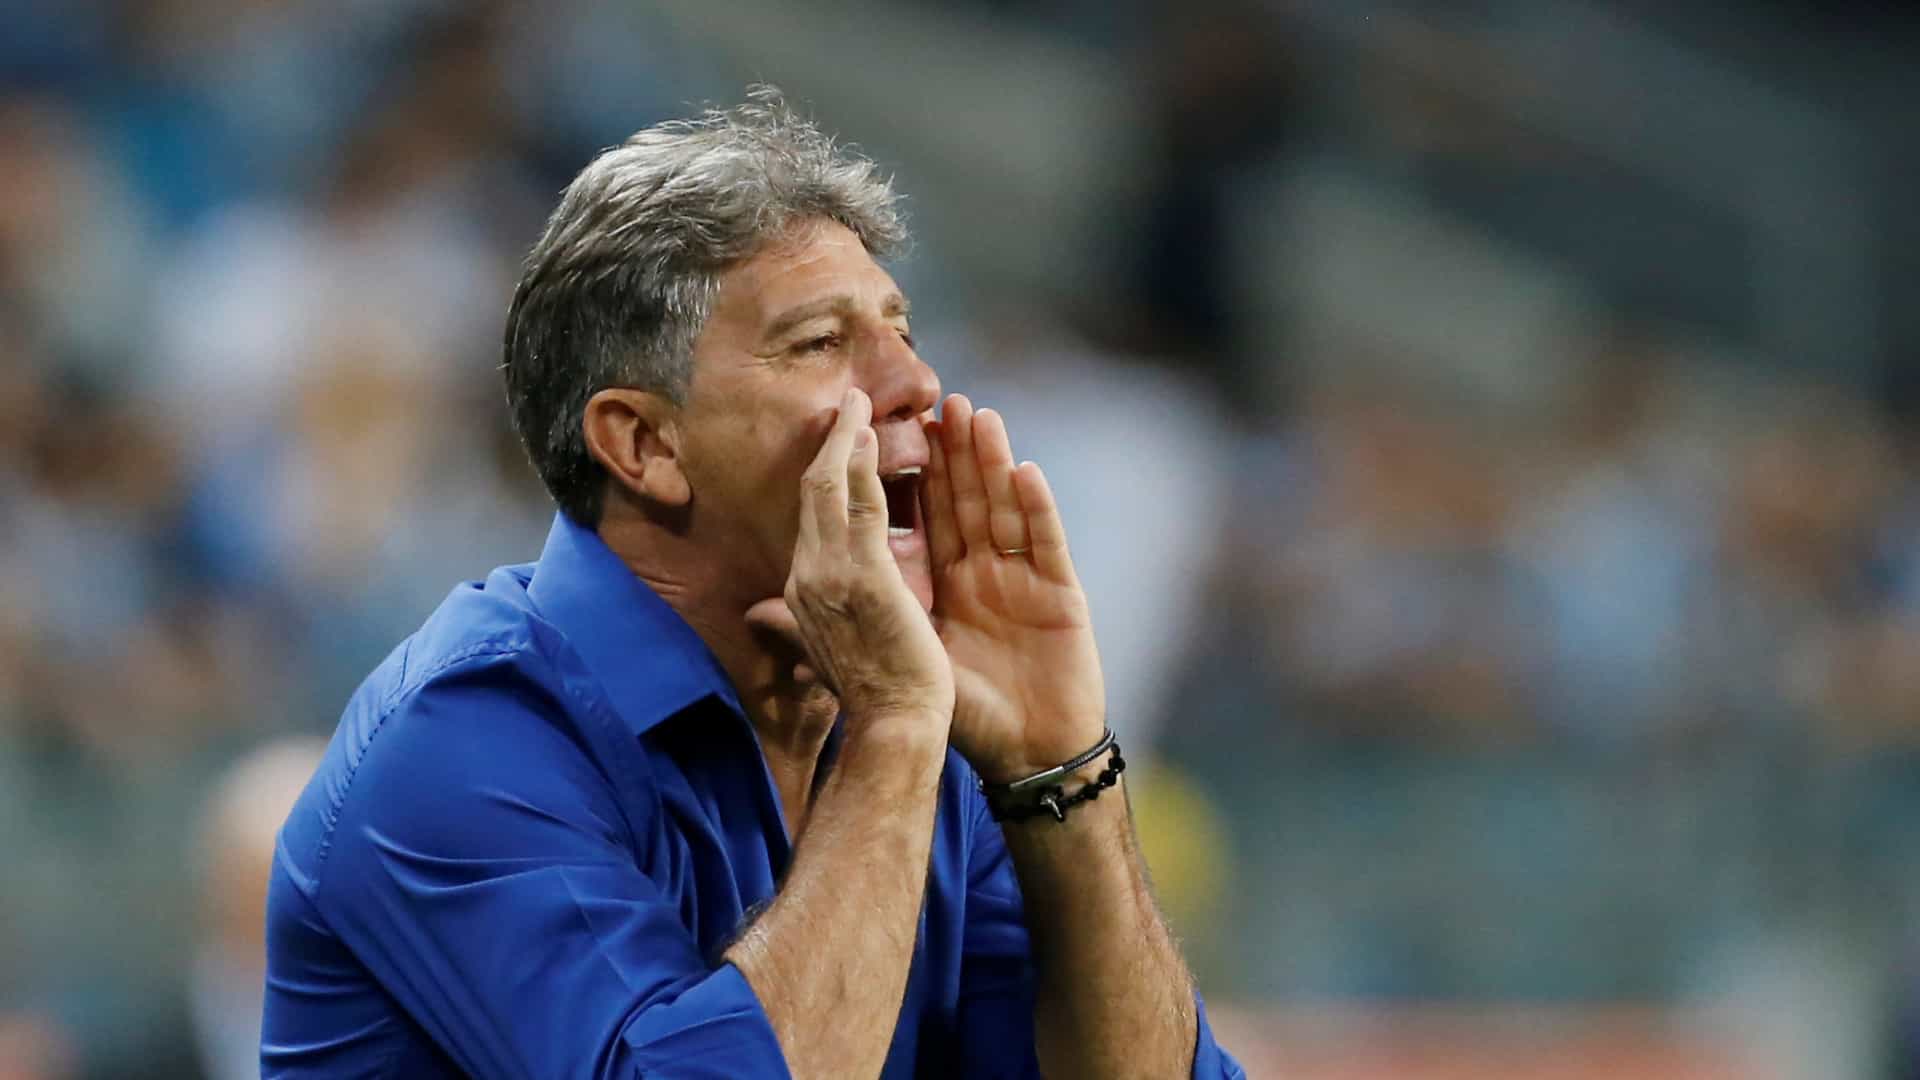 Grêmio faz a primeira de duas batalhas decisivas na Libertadores